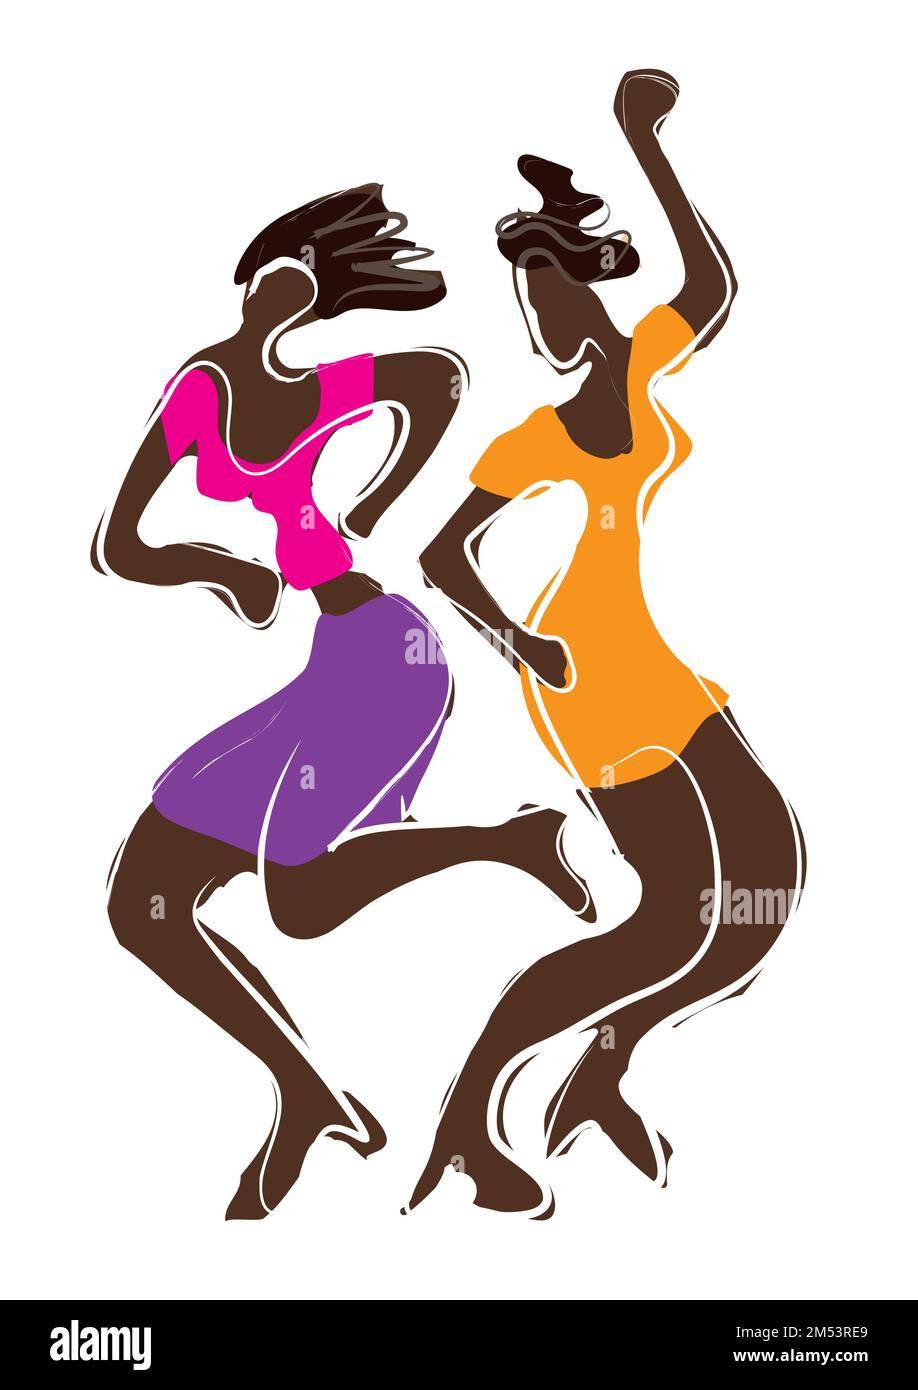 Danseuse disco, filles noires attirantes. Illustration colorée expressive de deux femmes dansantes. Isolé sur fond blanc. Vecteur disponible. Illustration de Vecteur